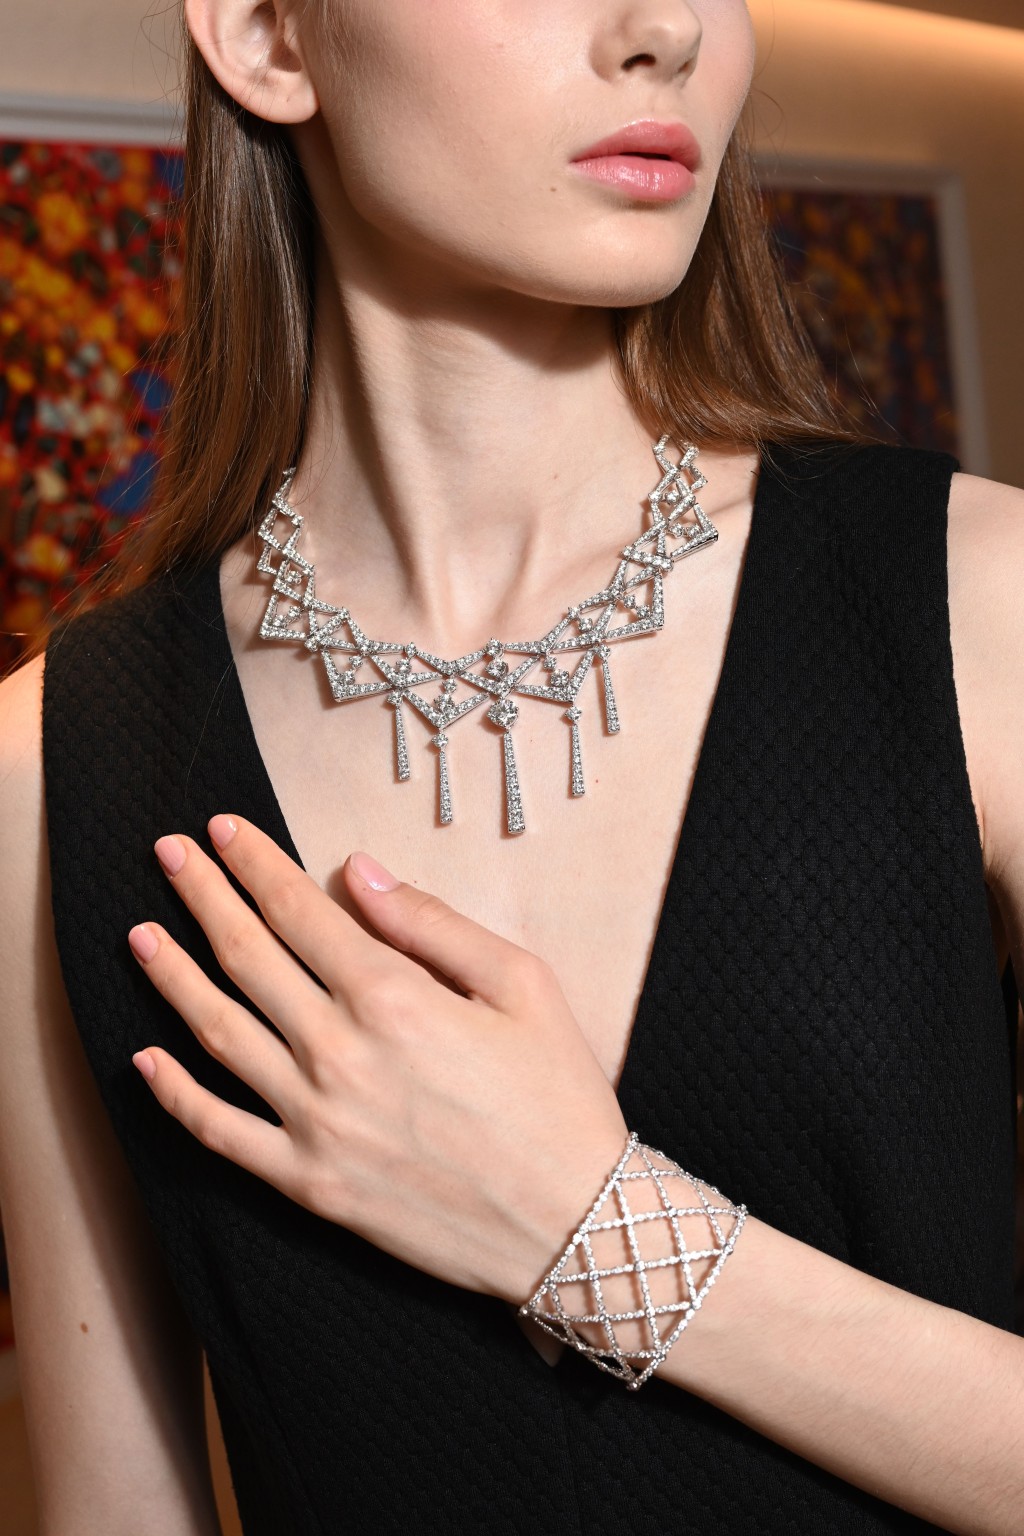 外形別具建築美感的Lorelei白金鑽石項鏈/$1,420,000、從喱士圖騰取材的Lorelei Lattice Diamond Intensive白金鑽石手鐲/$312,000。